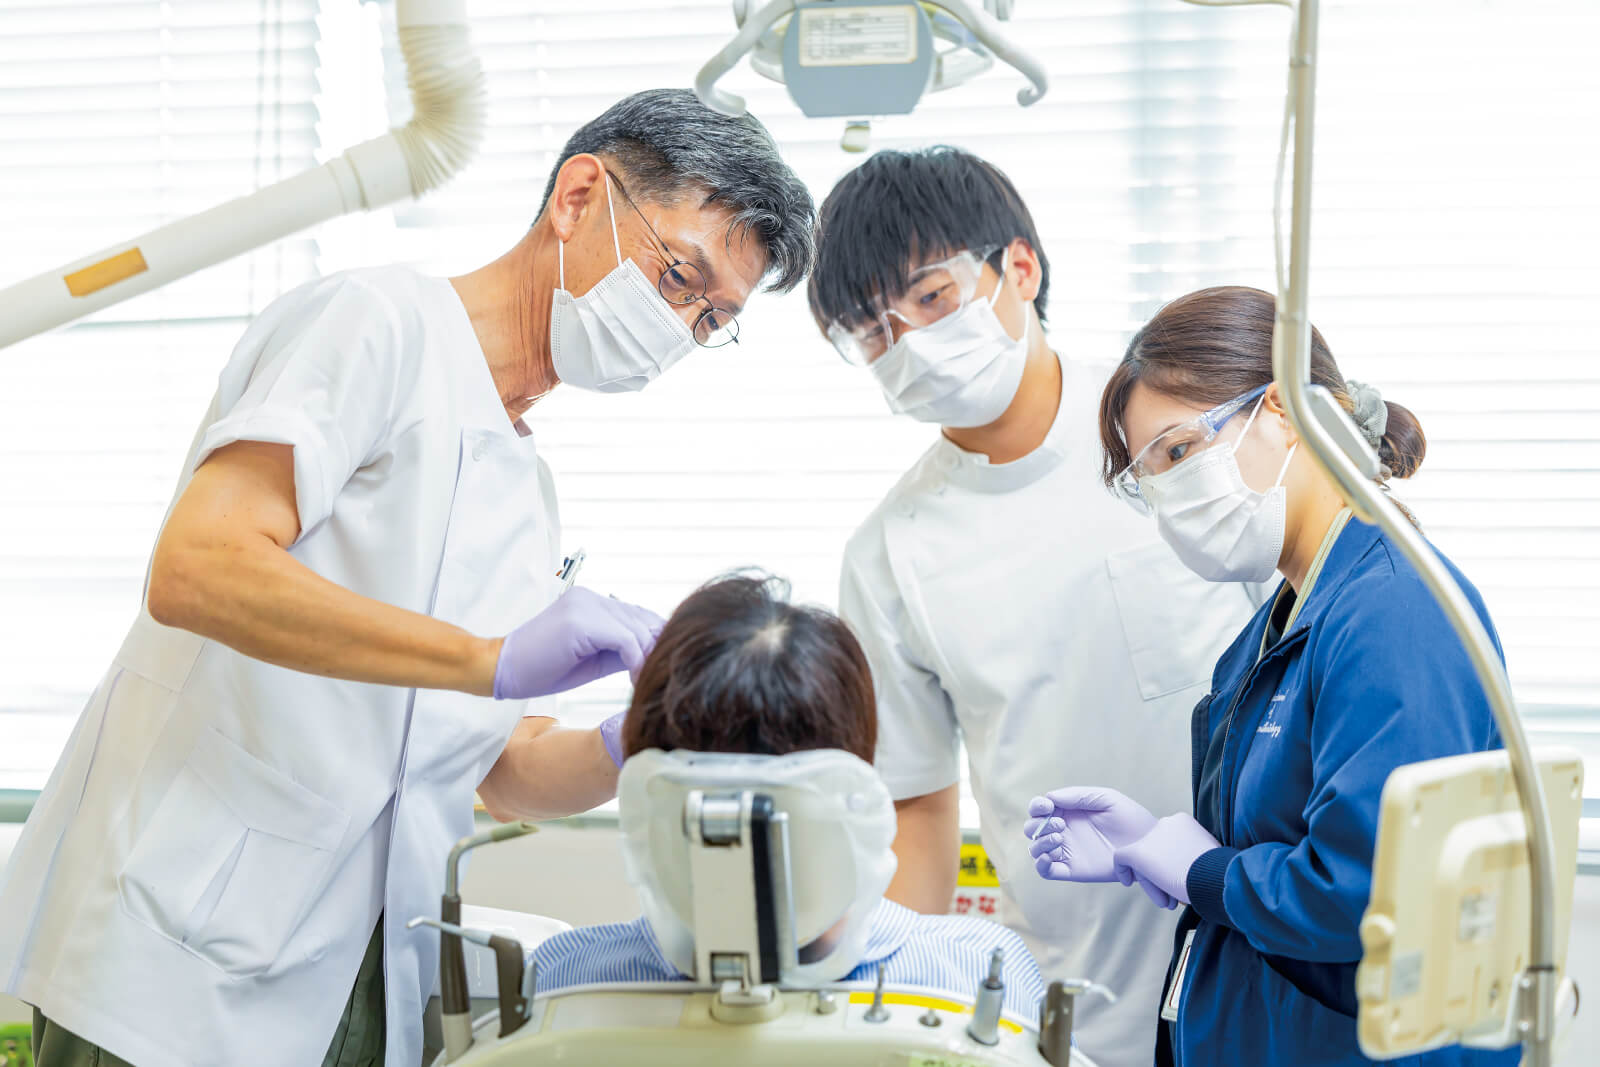 鹿児島大学歯学部では、昭和55年から離島歯科巡回診療を通じて島民の歯科保健の改善にあたってきた。平成19年からは臨床実習の一環として学生を同行させ、離島や僻地医療に貢献できる医療人の育成を目指している